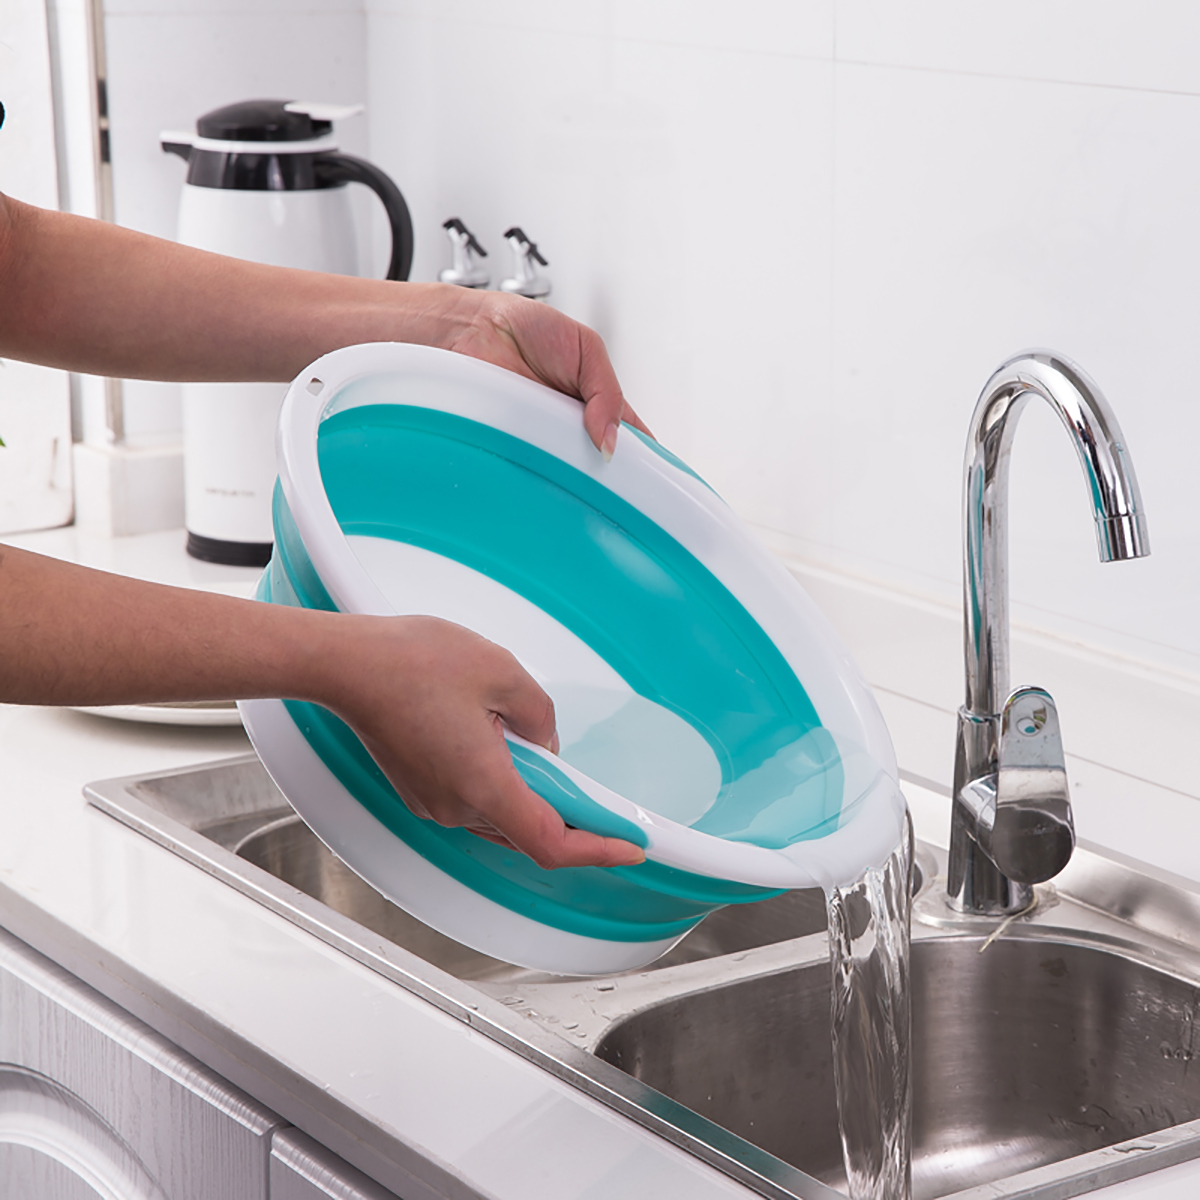 4-Size-Optional-Plastic-Foldable-Round-Dish-Tub-Portable-Hand-Feet-Washing-Basin-Space-Saving-Washtu-1748615-3